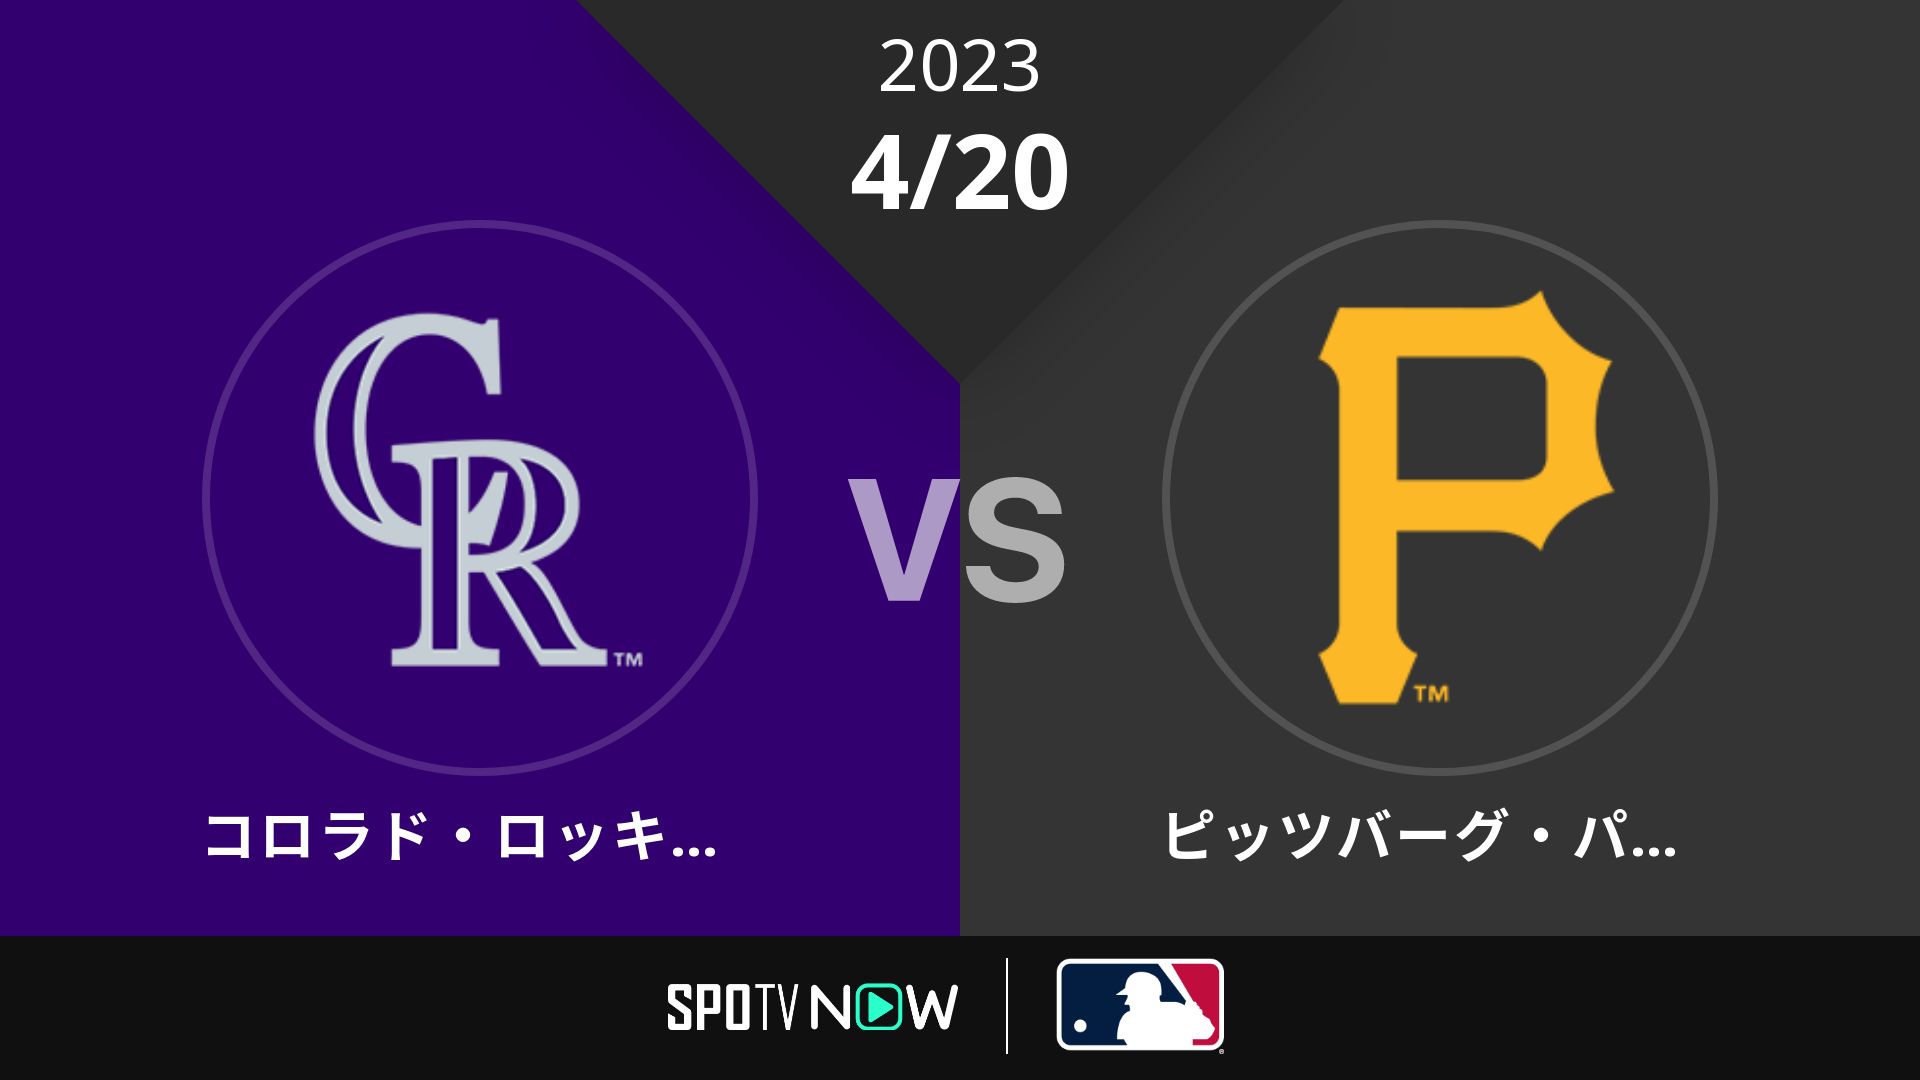 2023/4/20 ロッキーズ vs パイレーツ [MLB]